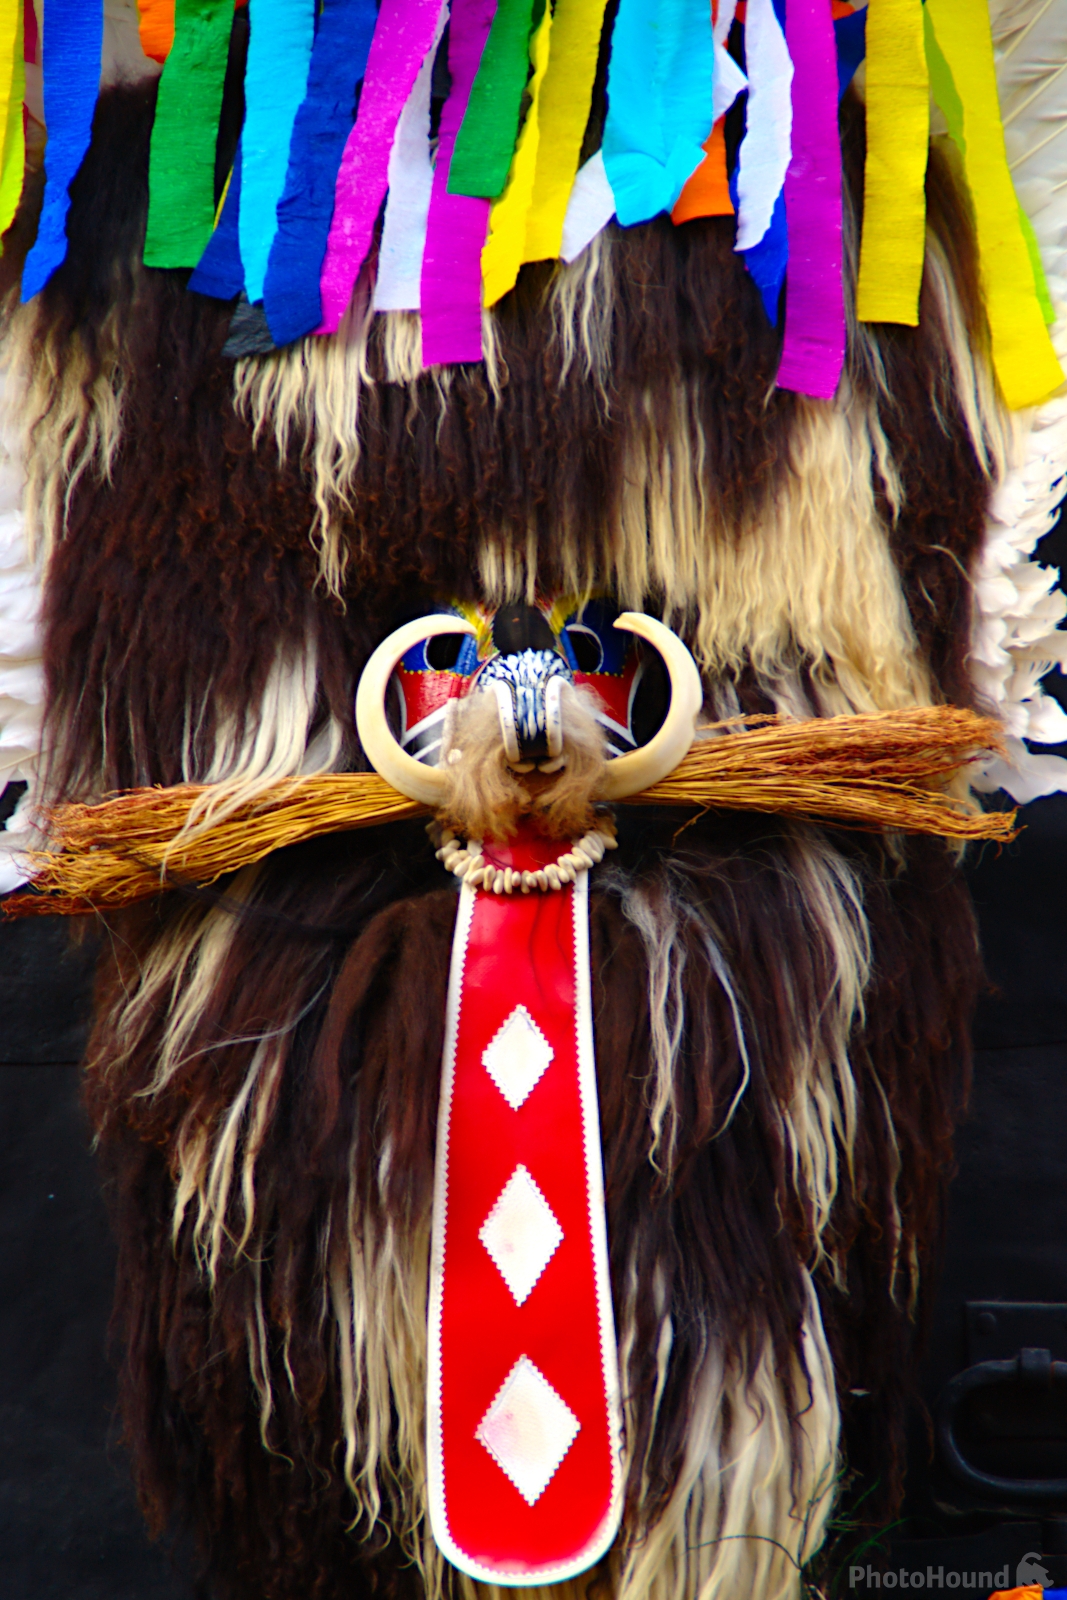 Image of Kurentovanje international carnival festival by Andreja Tominac